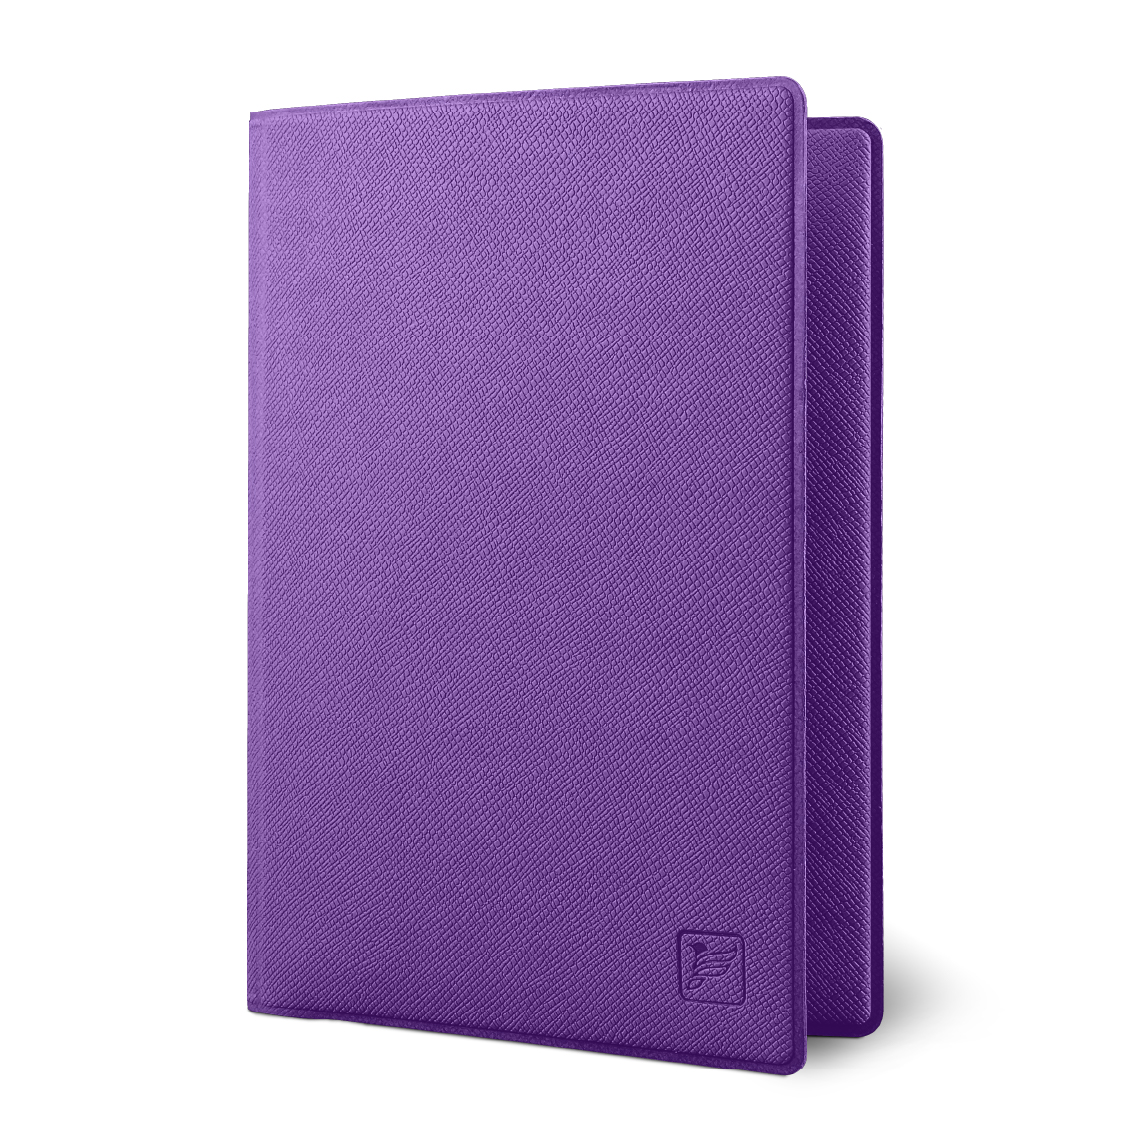 Обложка для паспорта унисекс Flexpocket KOP-01 фиолетовая